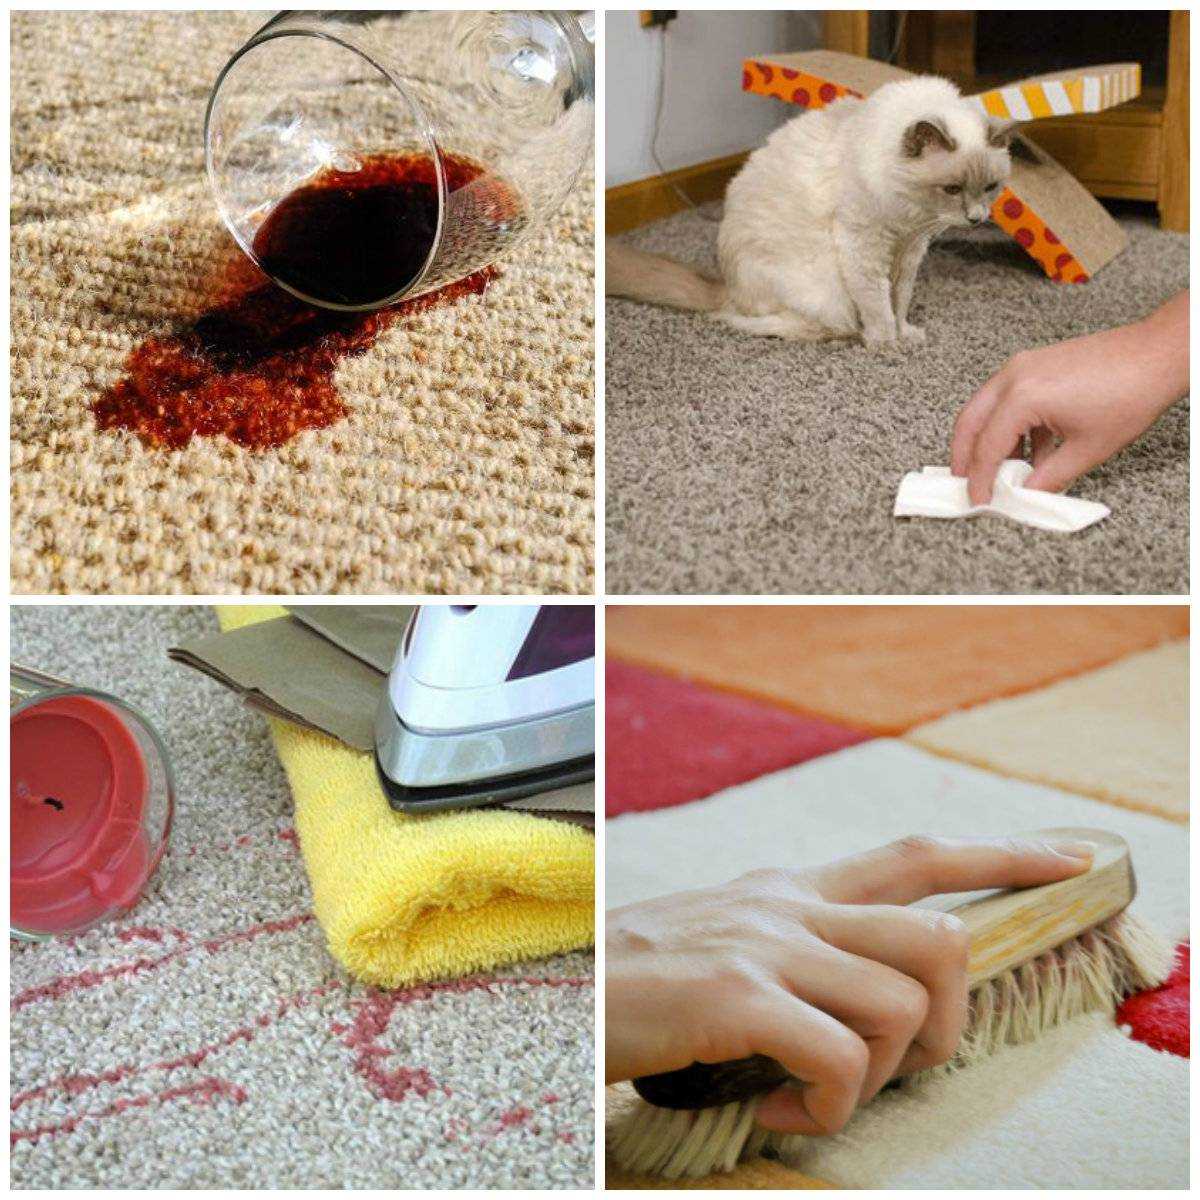 Средство ваниш (vanish) для ковров: инструкция, отзывы +видео